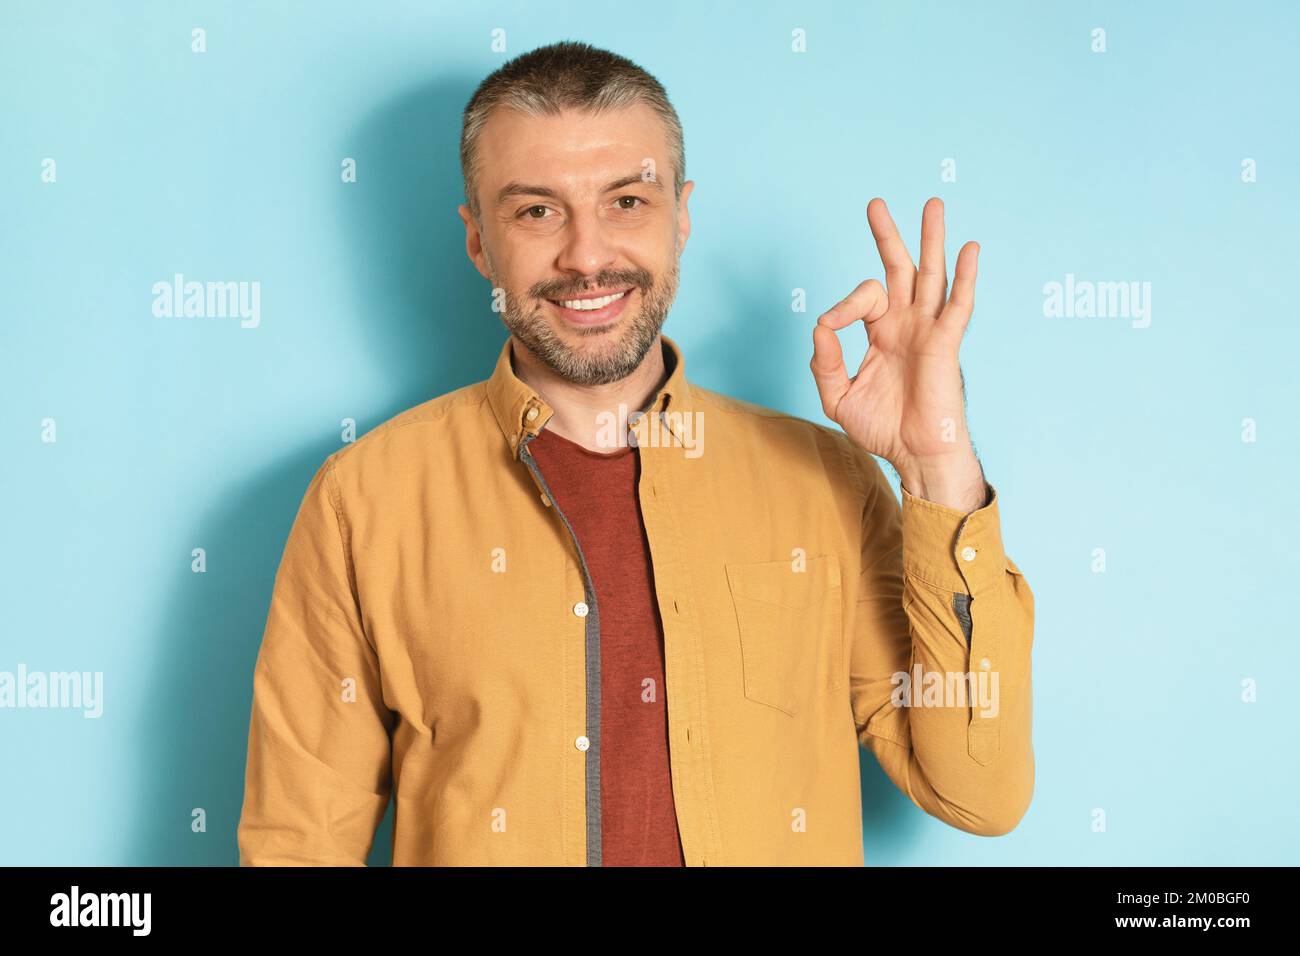 Je vais bien. Portrait d'un homme mûr heureux faisant l'approbation ok geste et souriant à l'appareil photo sur fond bleu studio Banque D'Images